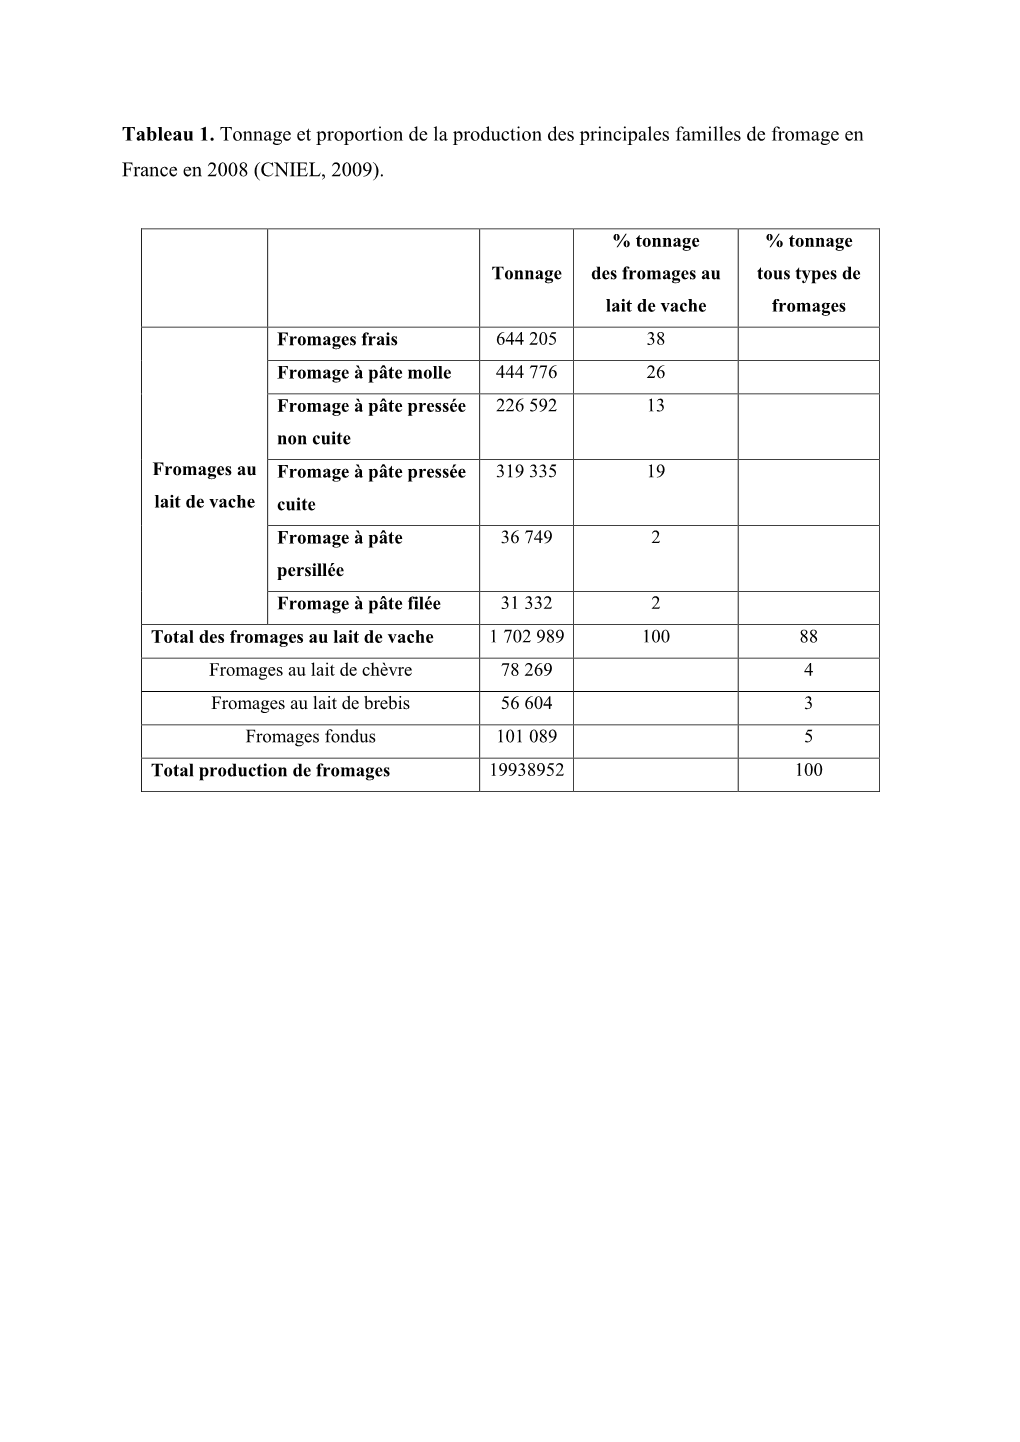 Tableau 1. Tonnage Et Proportion De La Production Des Principales Familles De Fromage En France En 2008 (CNIEL, 2009)